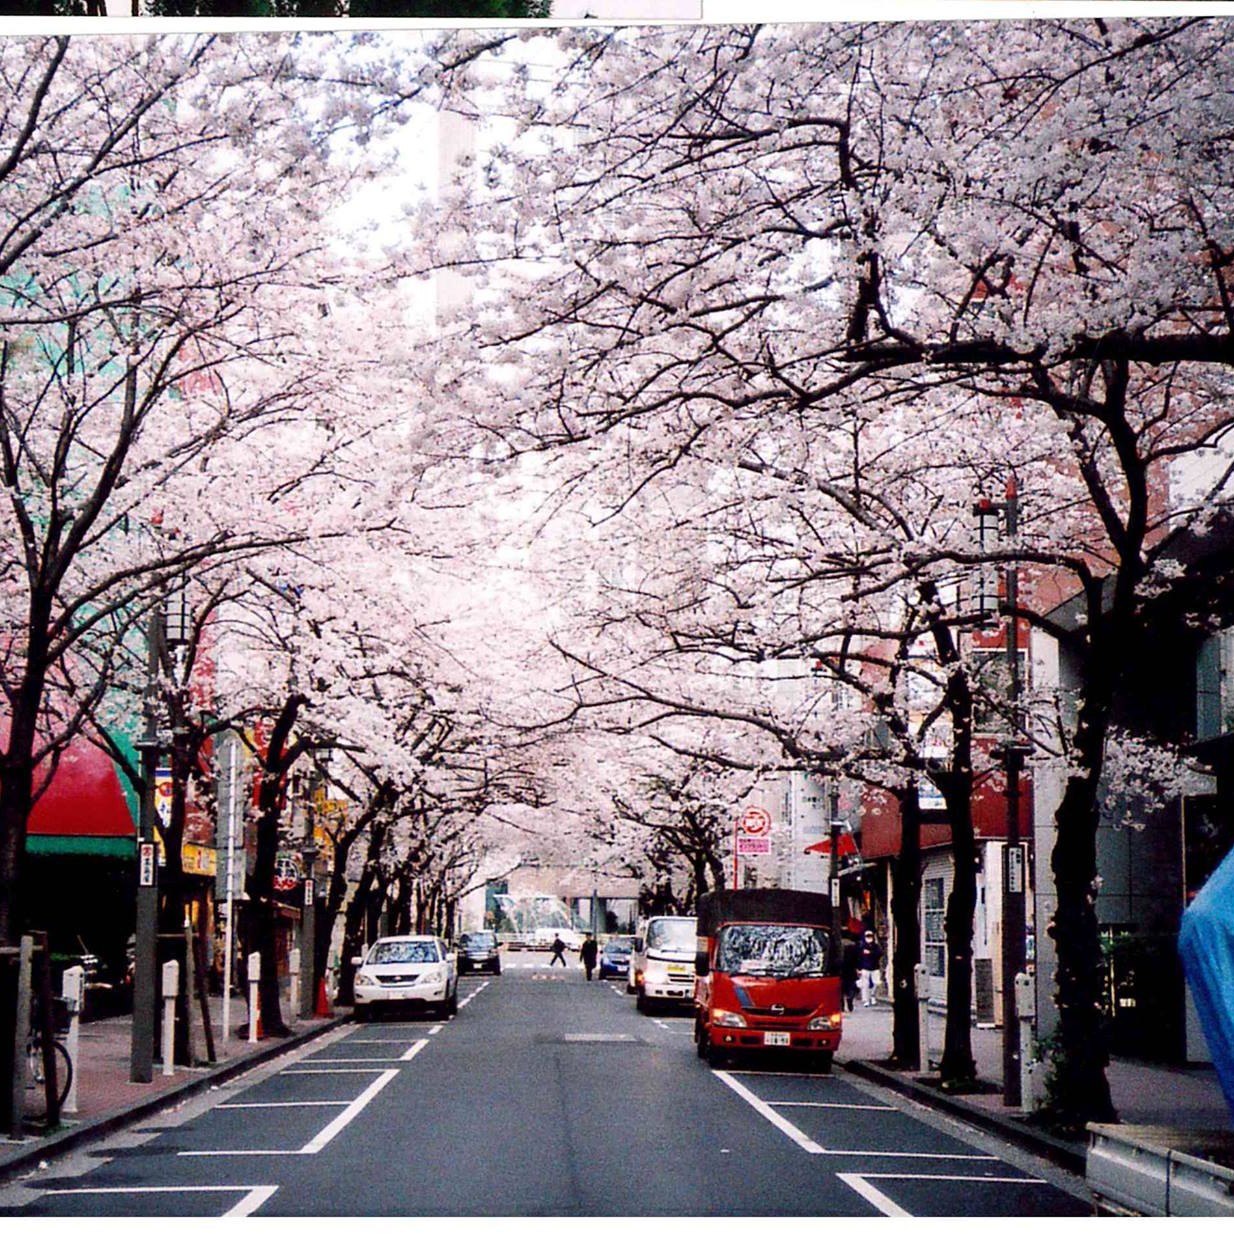 Tokyo: Sakura season